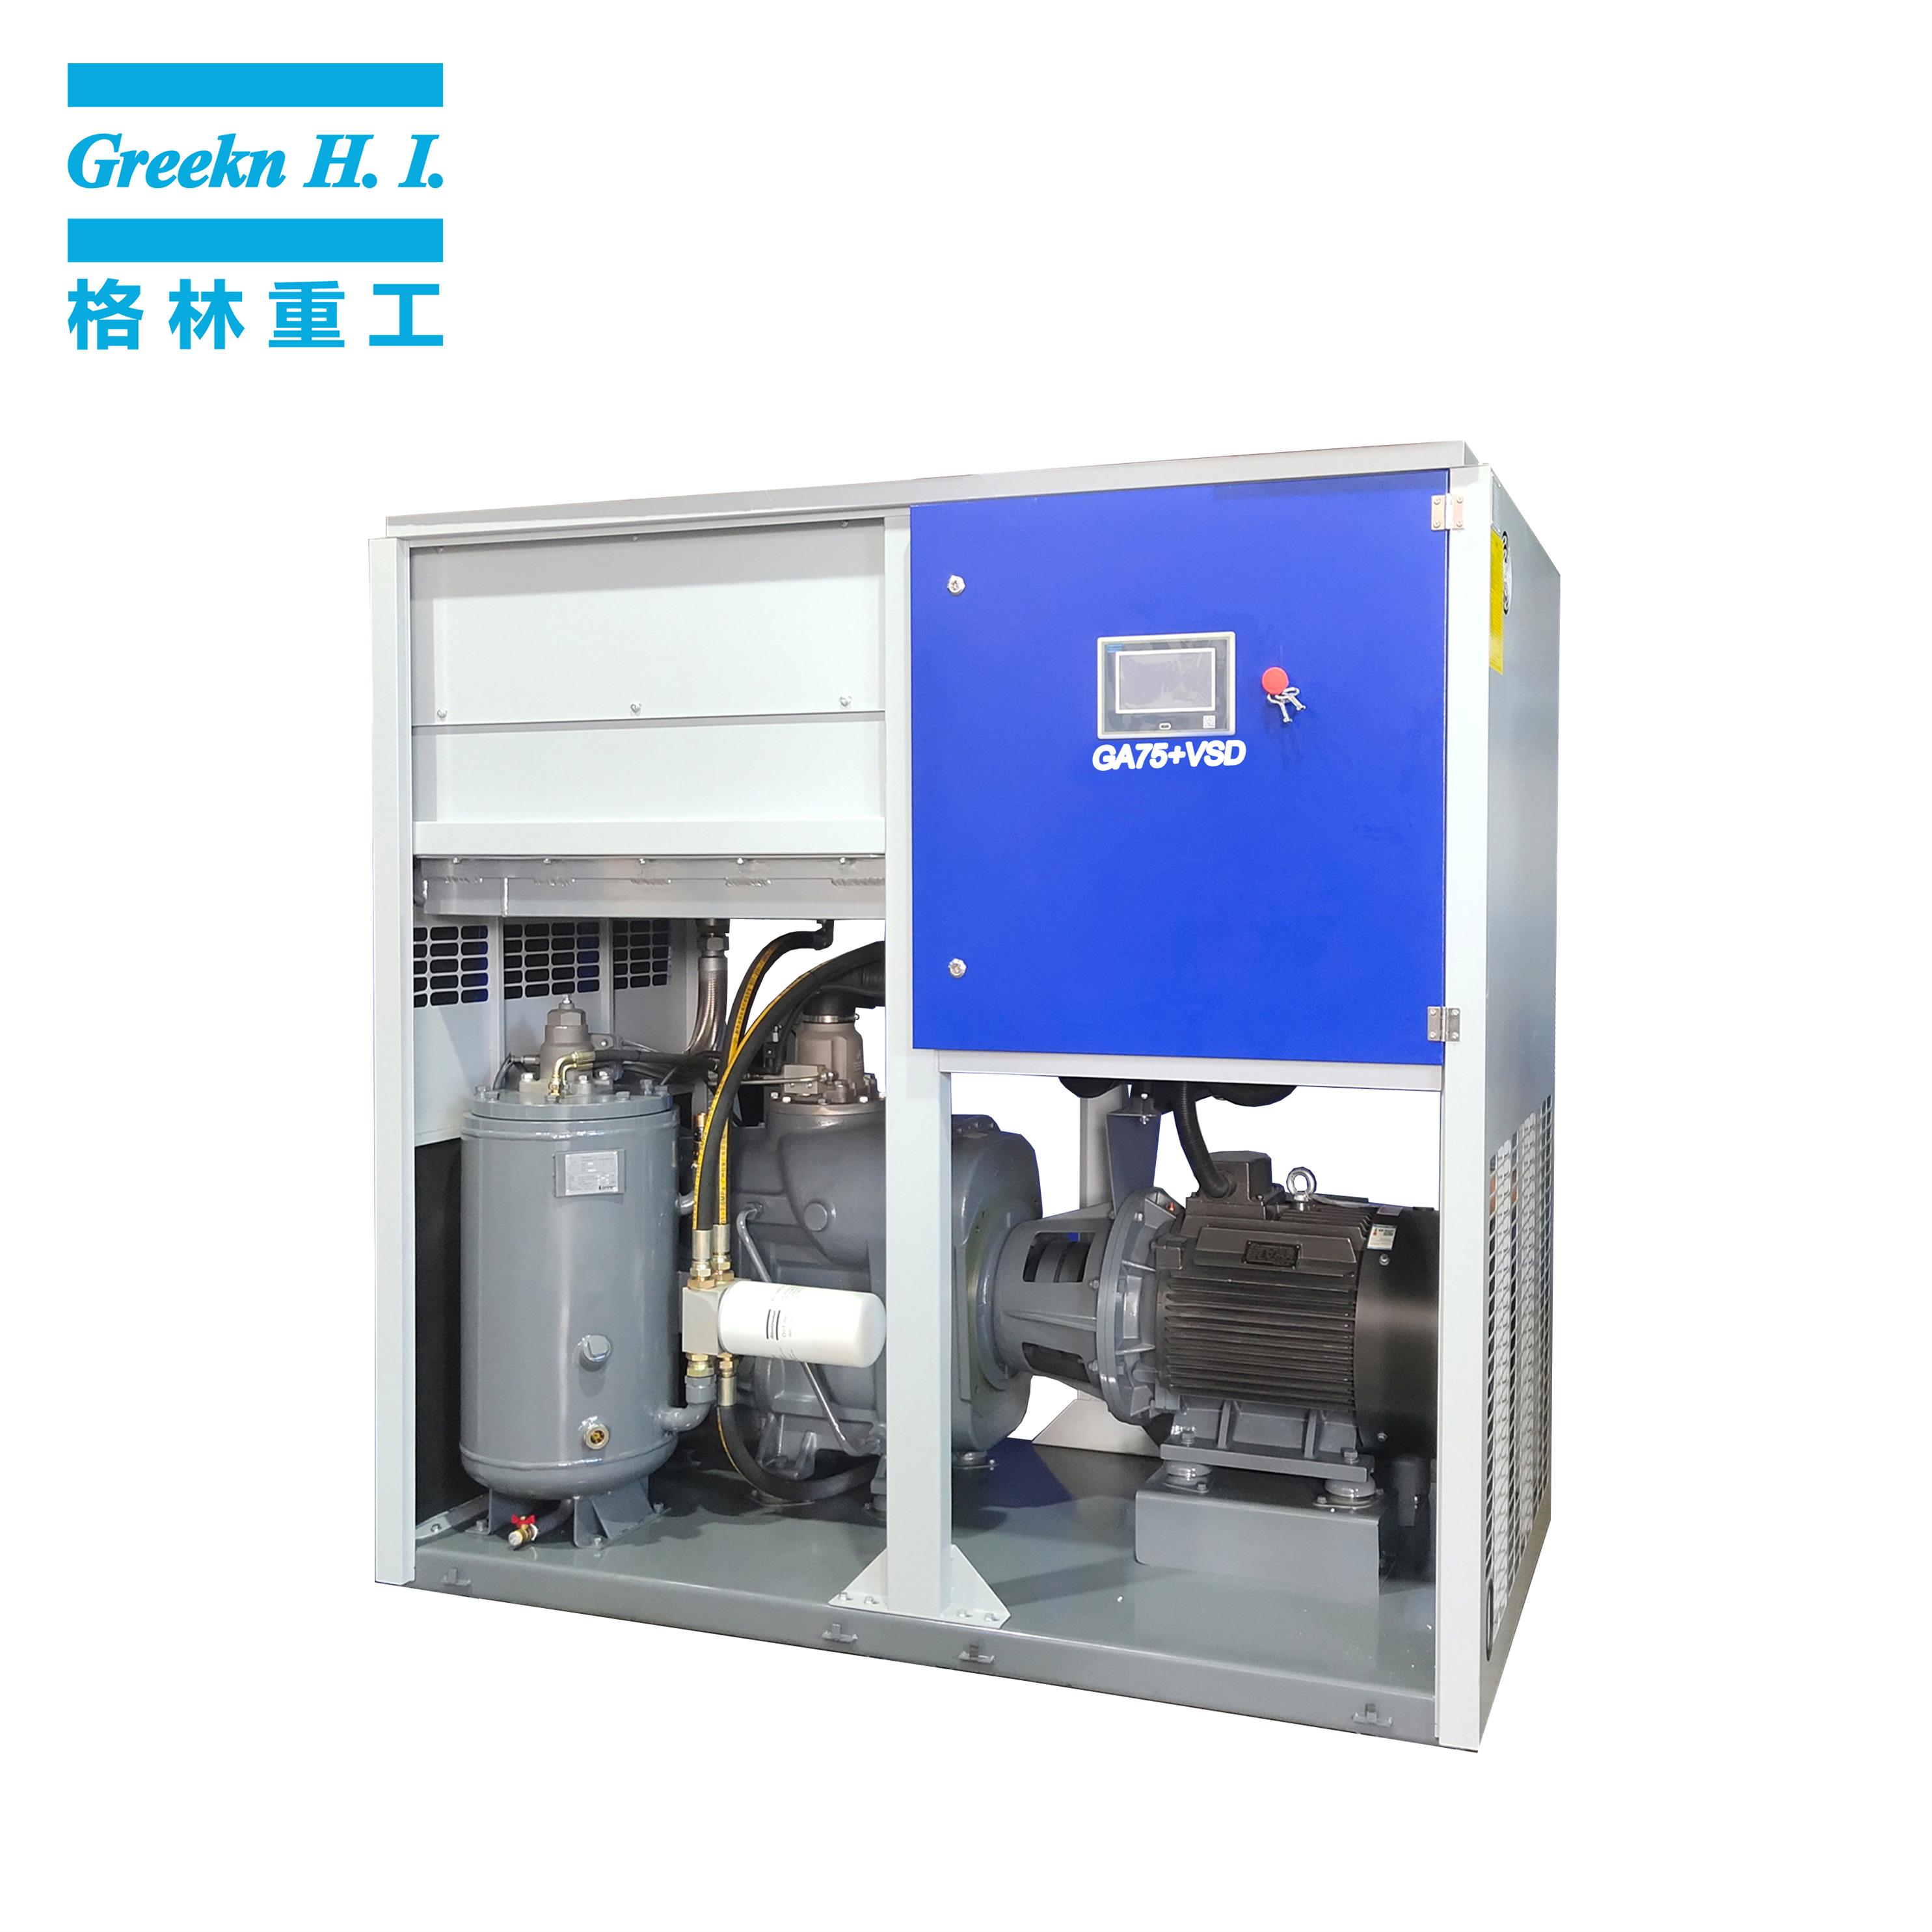 Greeknhi GA75+VSD Industrial Variable Speed Energy Saving Screw Air Compressor